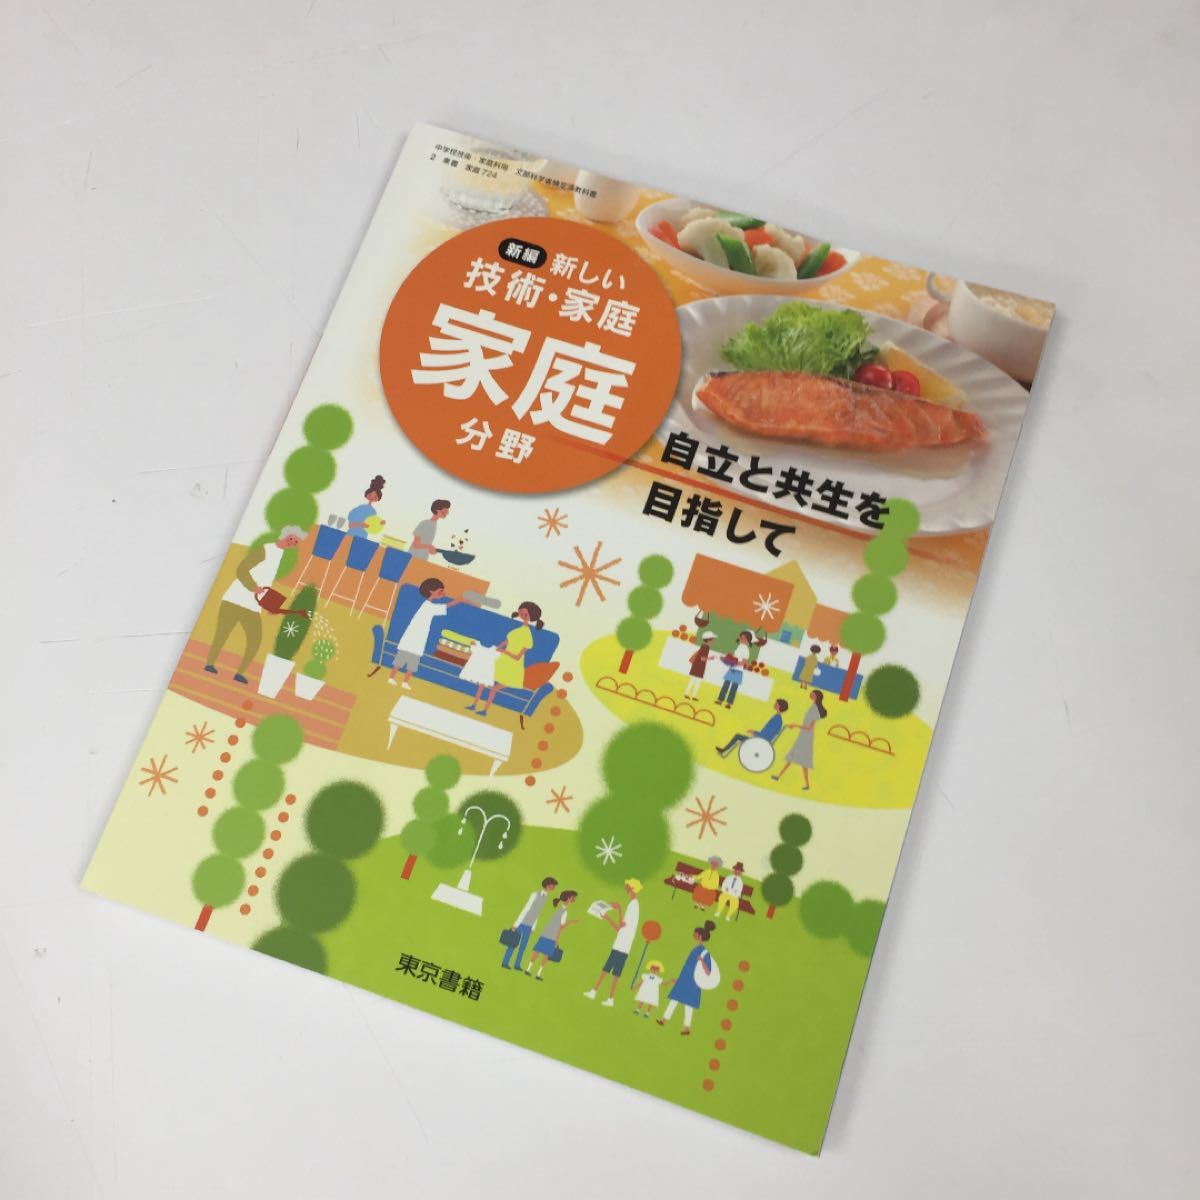 ［新品未使用］東京書籍 新しい技術・家庭 家庭分野